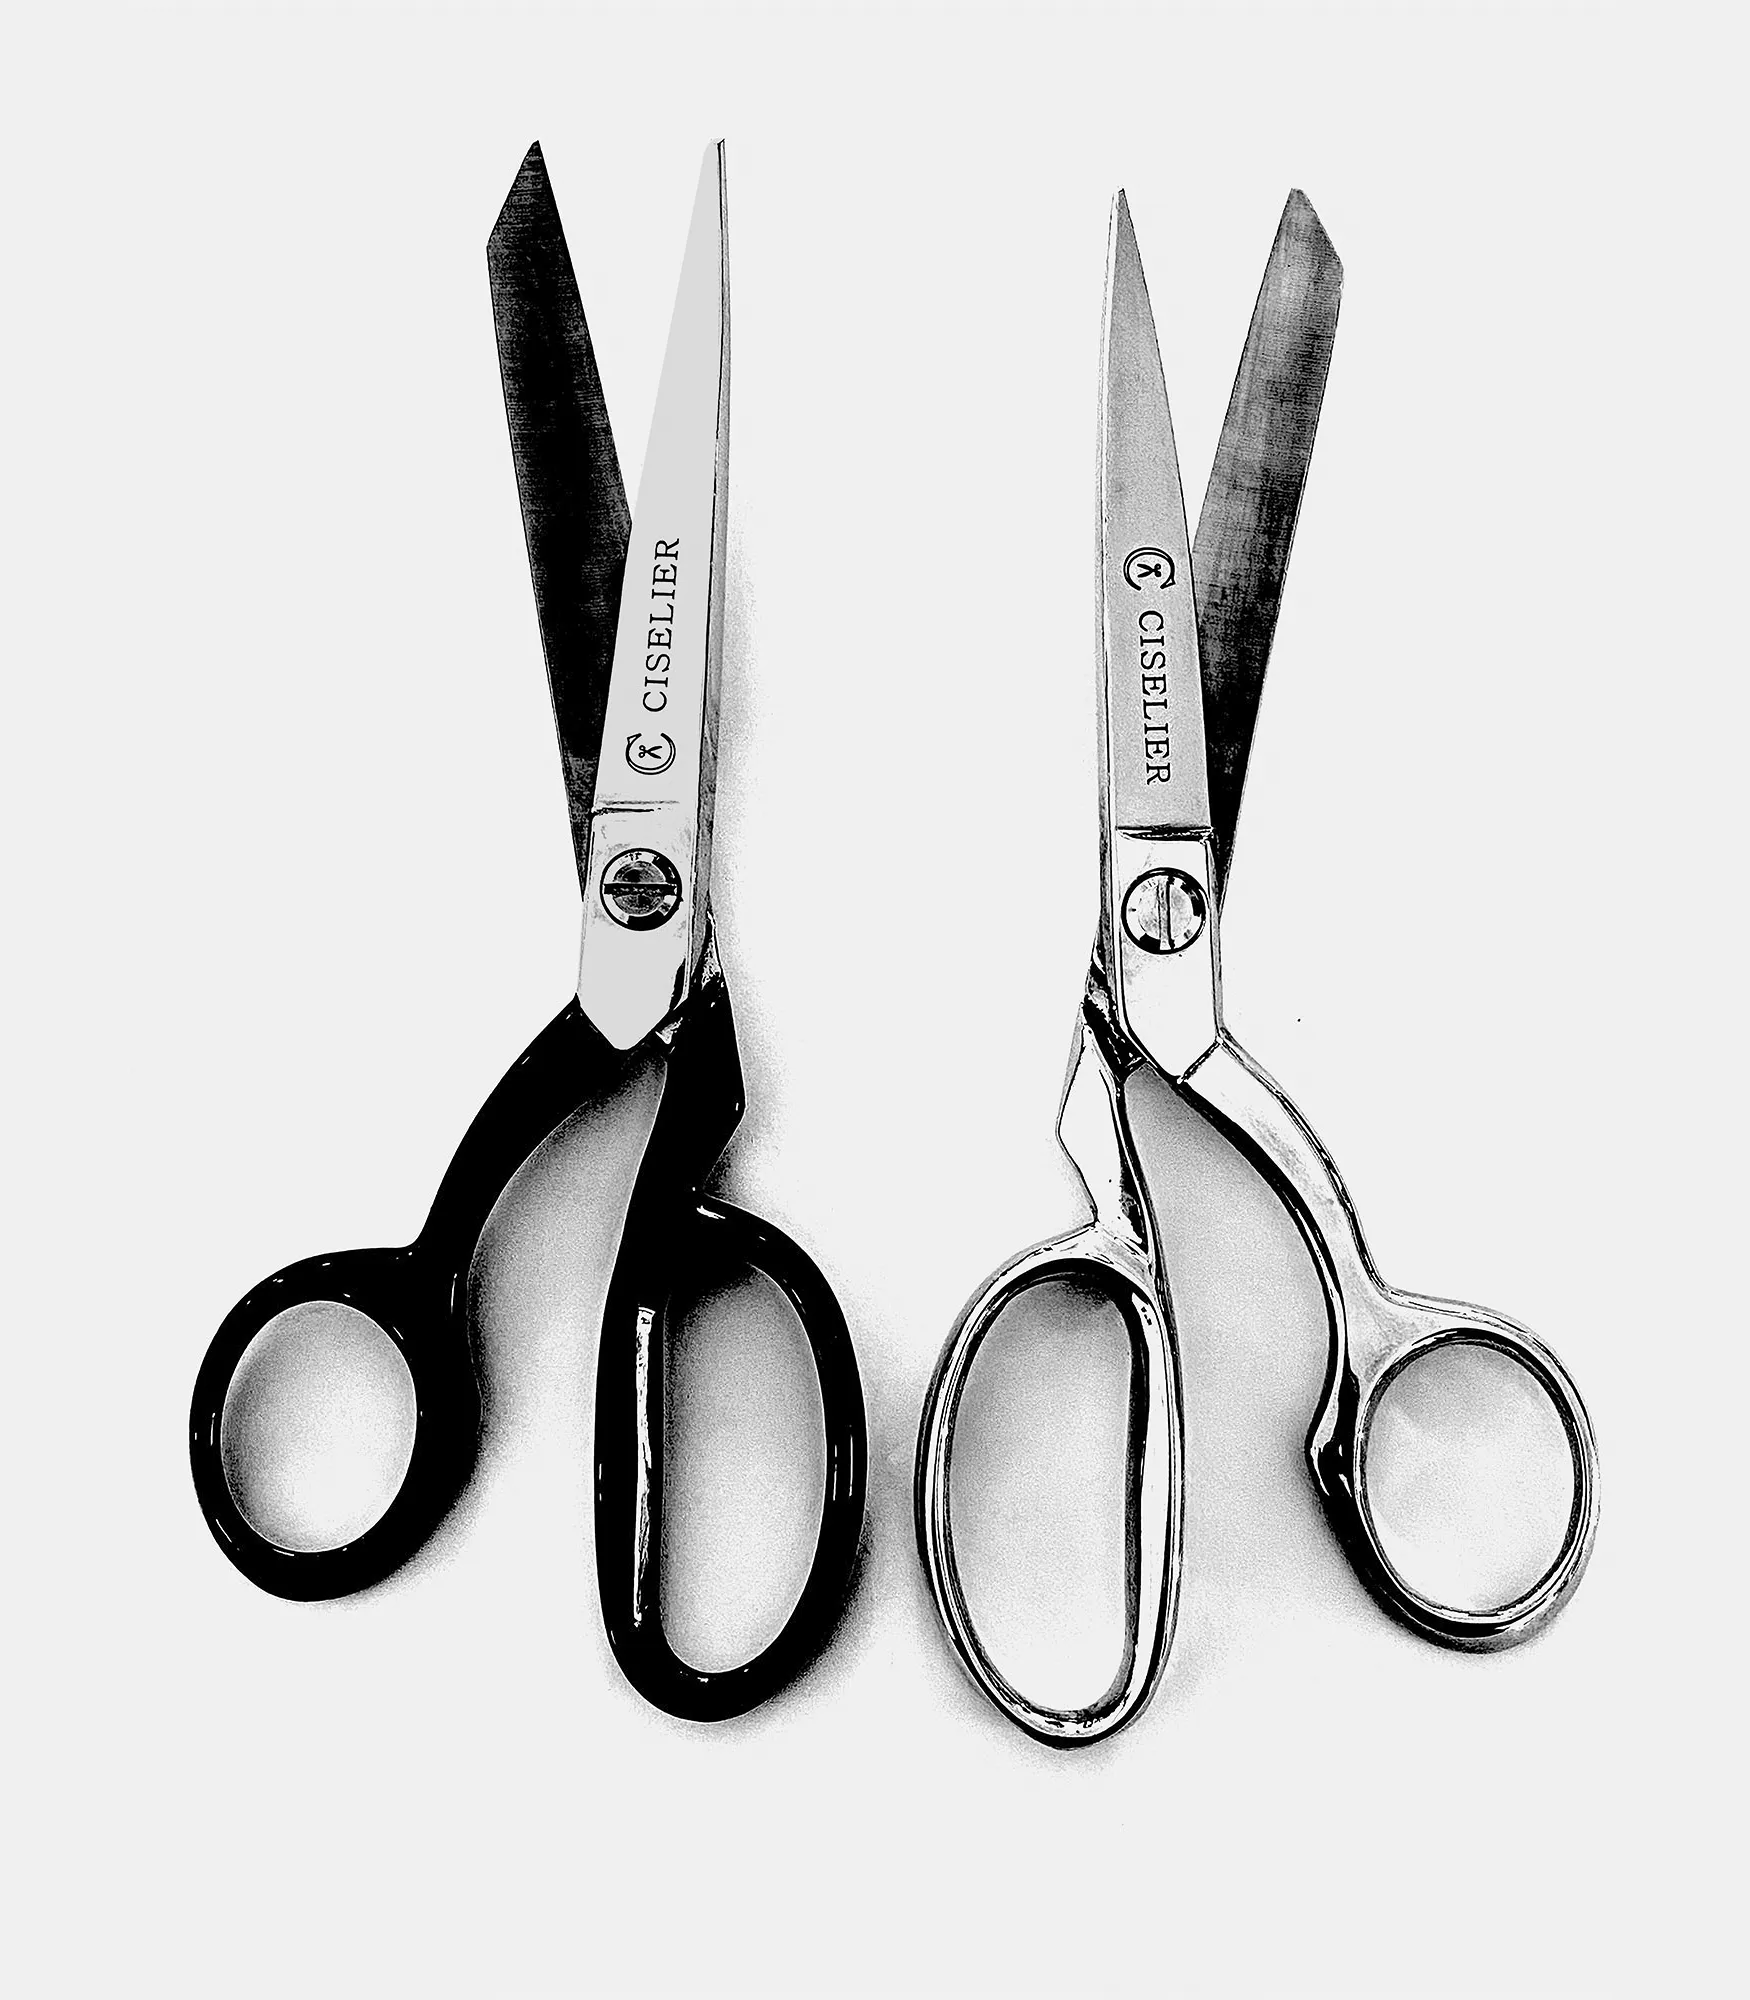 Two opposing scissors.